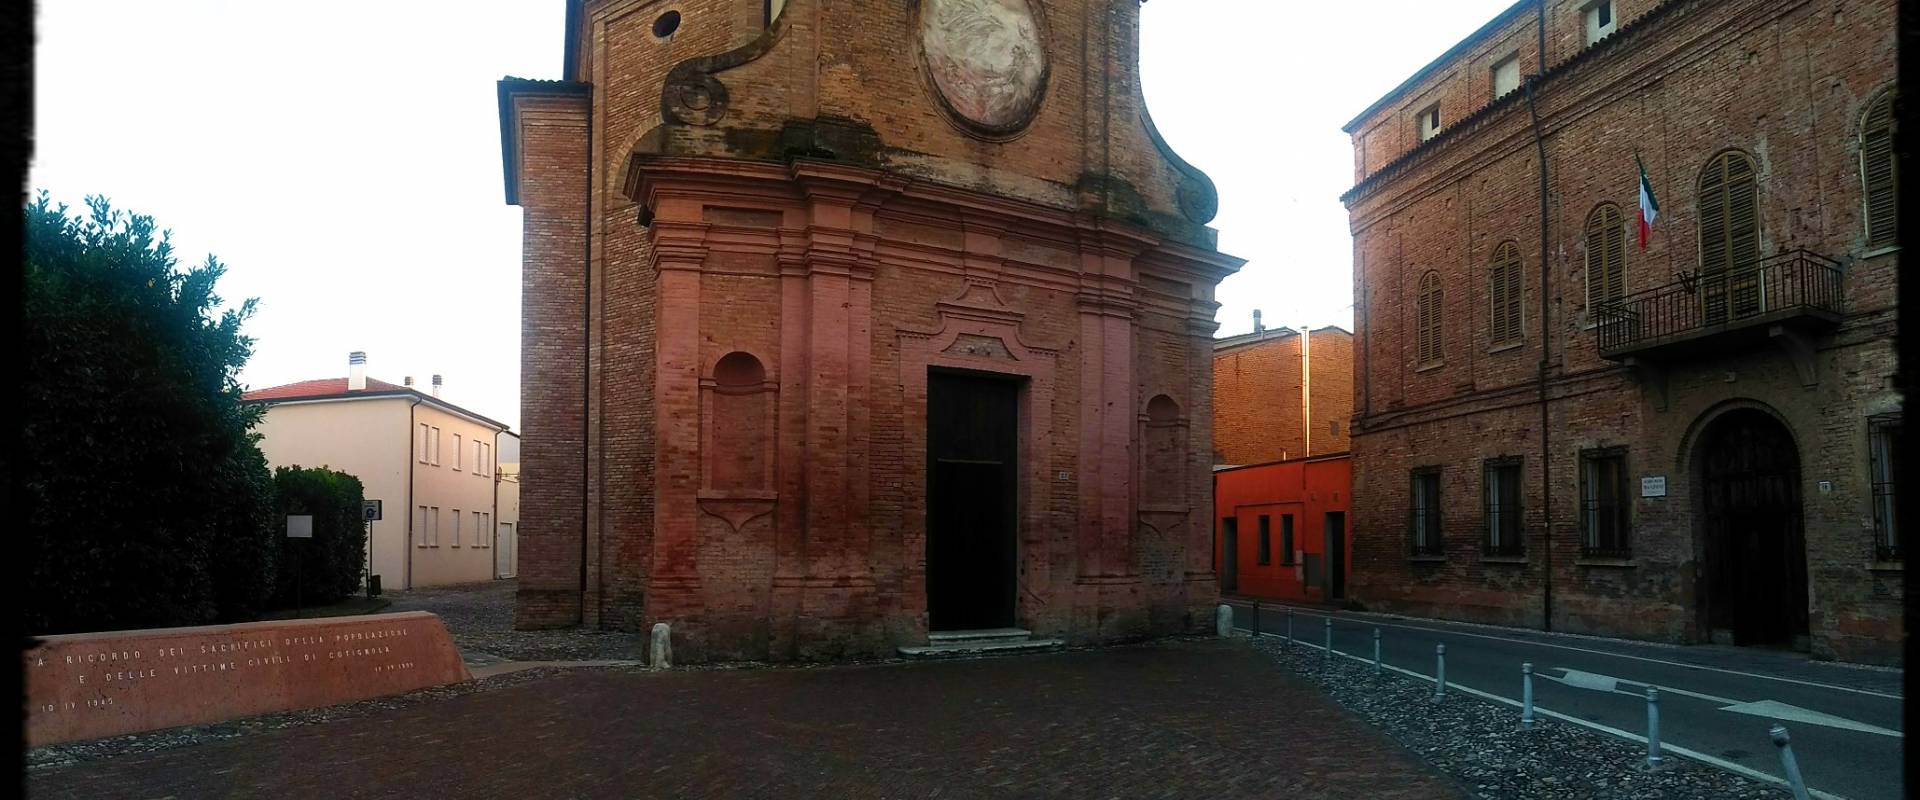 Chiesa del Suffragio, Cotignola - XVIII secolo foto di Lomargraphics